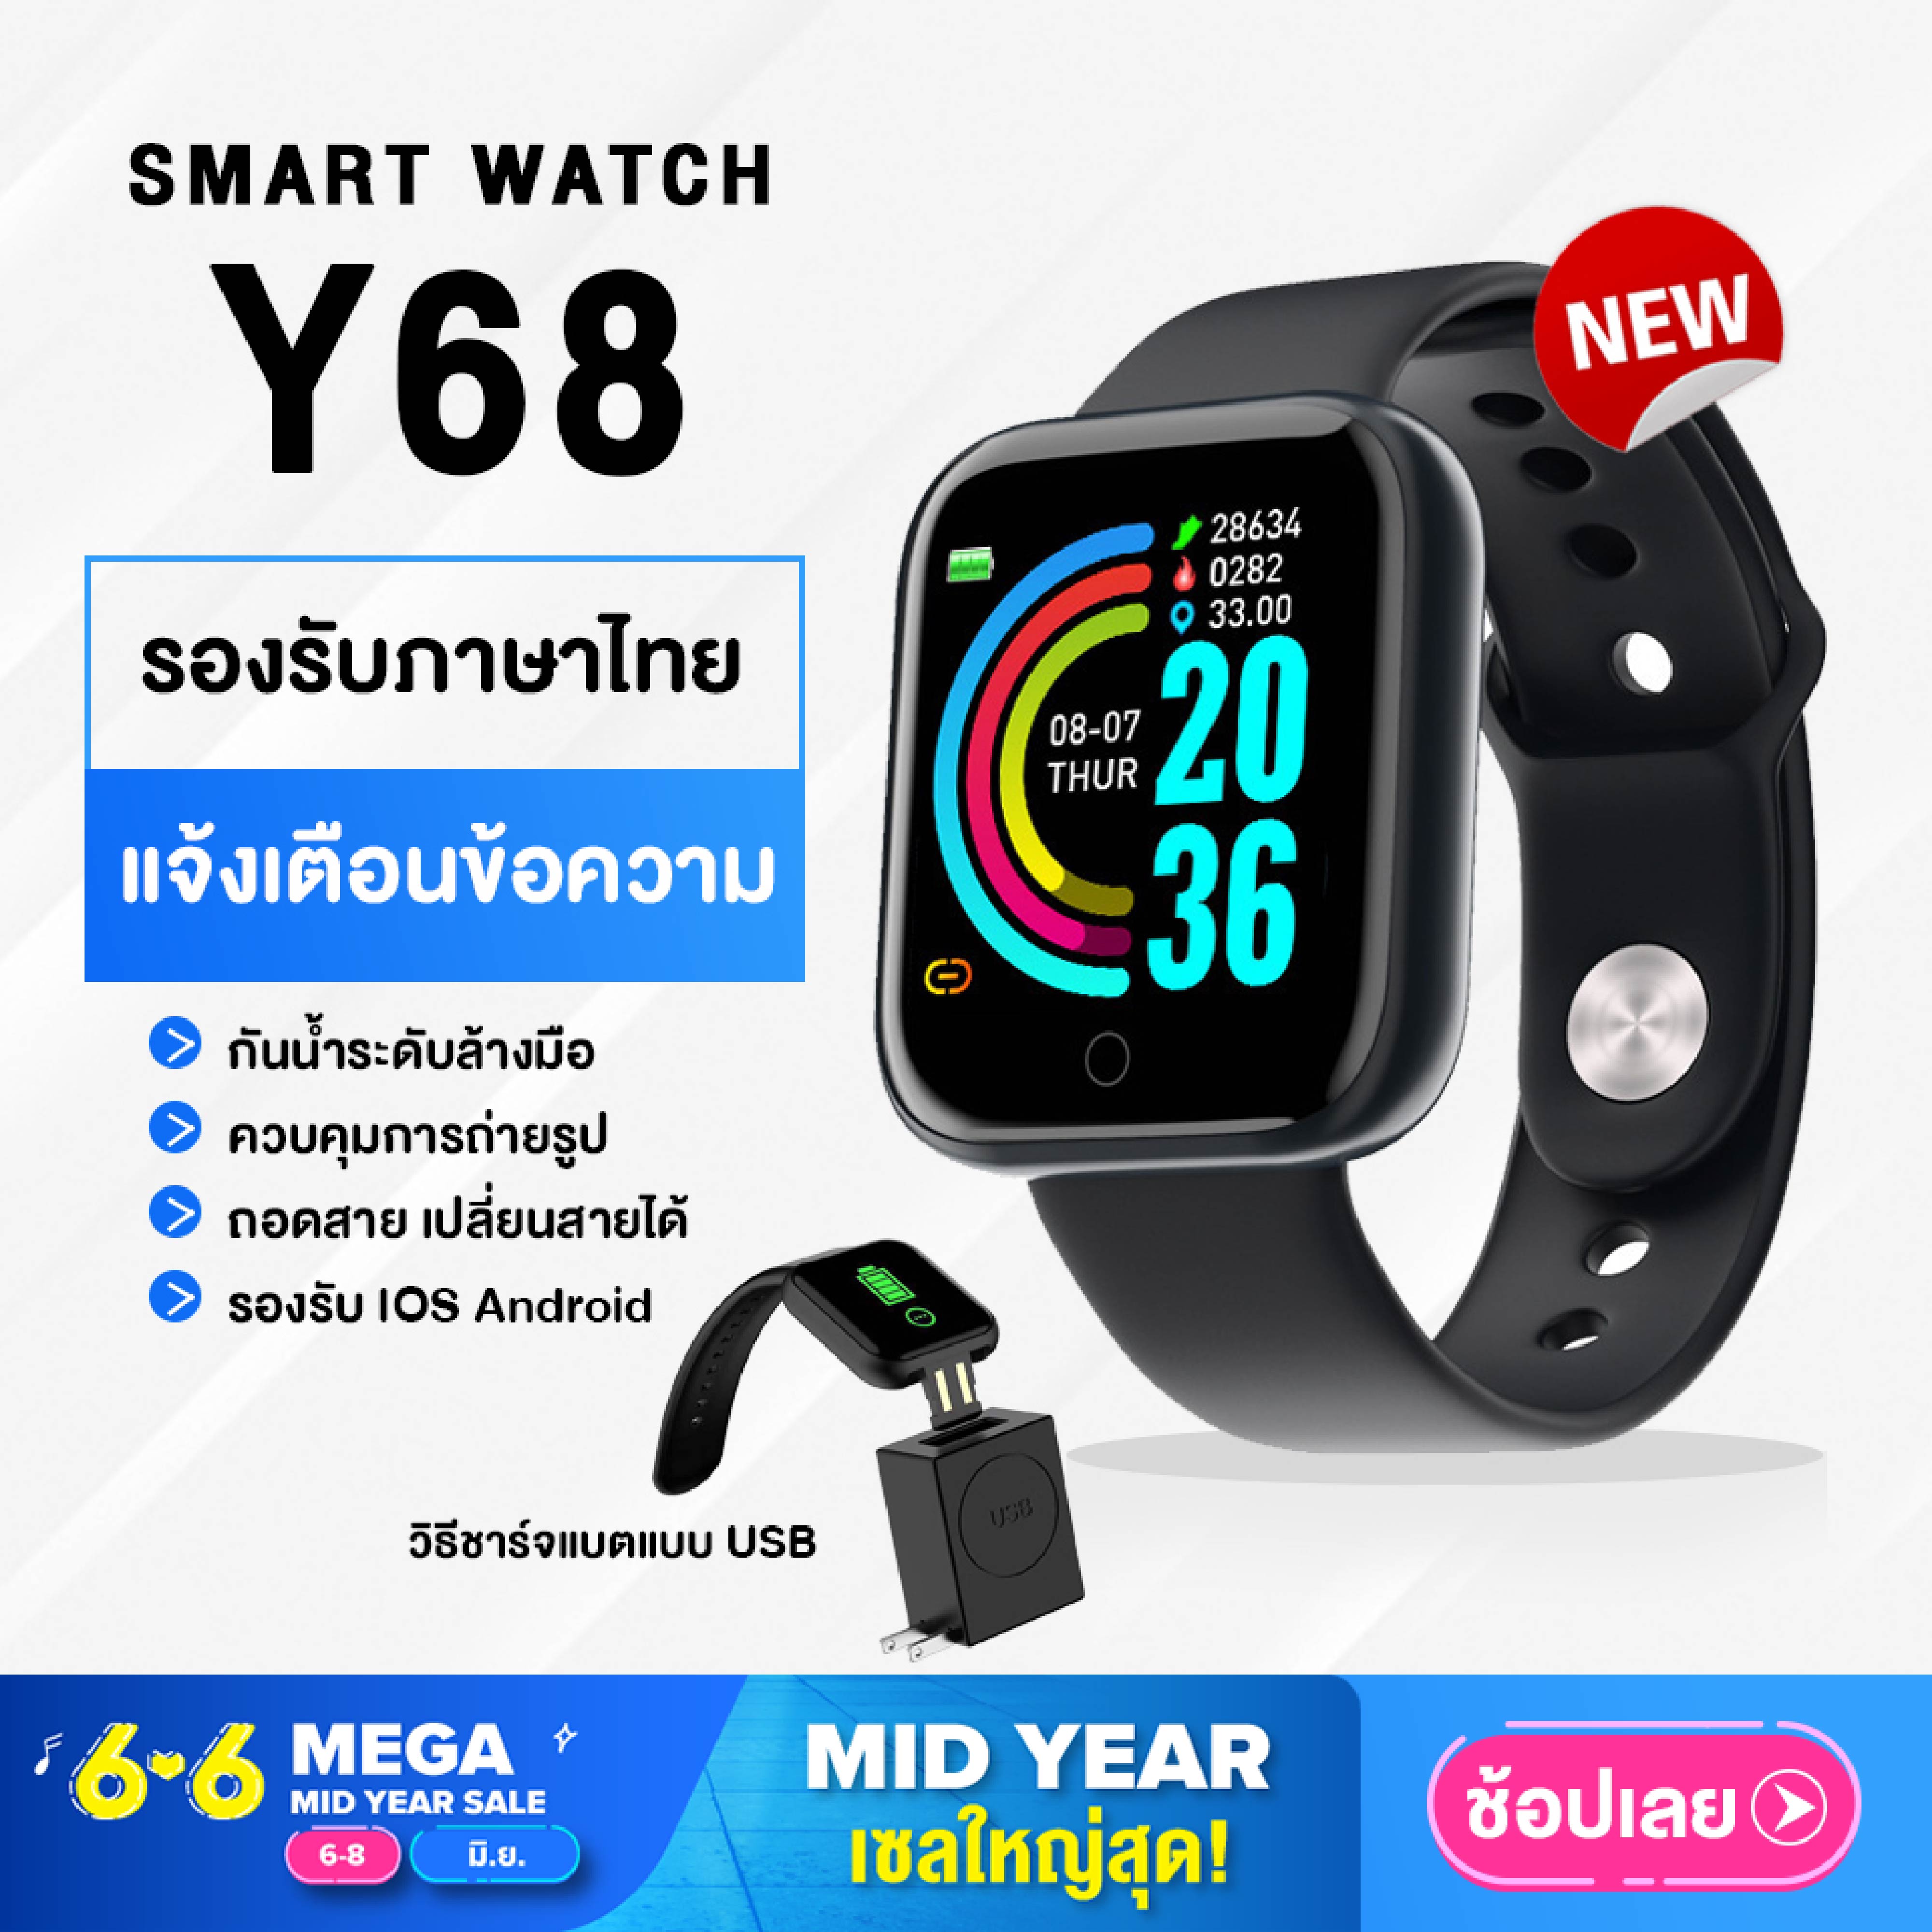 【พร้อมส่งจากไทย】Smart watch Y68 นาฬิกาอัจฉริยะ นาฬิกาบลูทูธ IOS Android นาฬิกาสมาร์ทวอทช์ D20 นาฬิกาอัจฉริยะ ฟิตเนสแทรคเกอร์ สายรัดข้อมืออัจฉริยะ สายรัดข้อมือเพื่อสุขภาพ นาฬิกาข้อมือ นาฬิกา นาฬิกาแฟชั่น Smart Band Fitness Smart Bracele